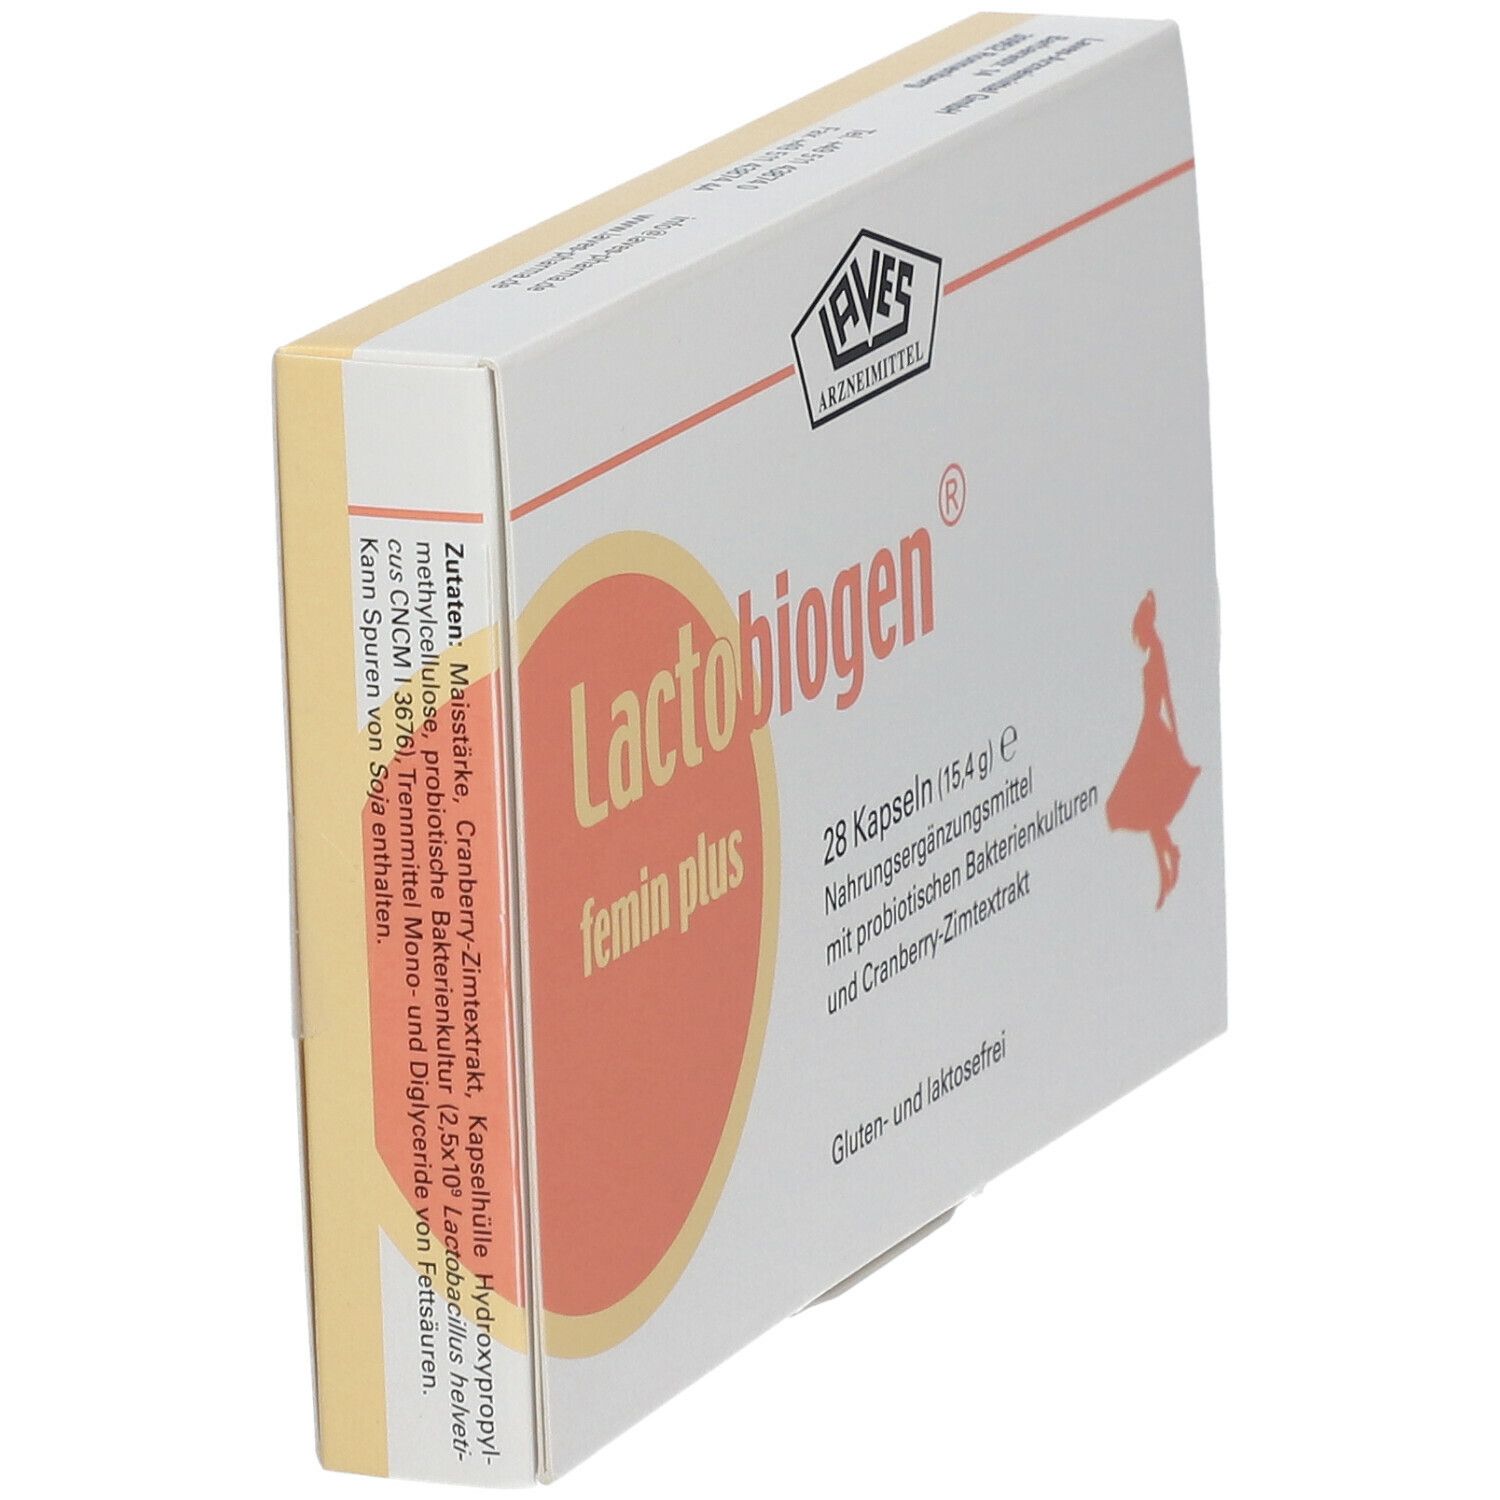 Lactobiogen® feminin plus